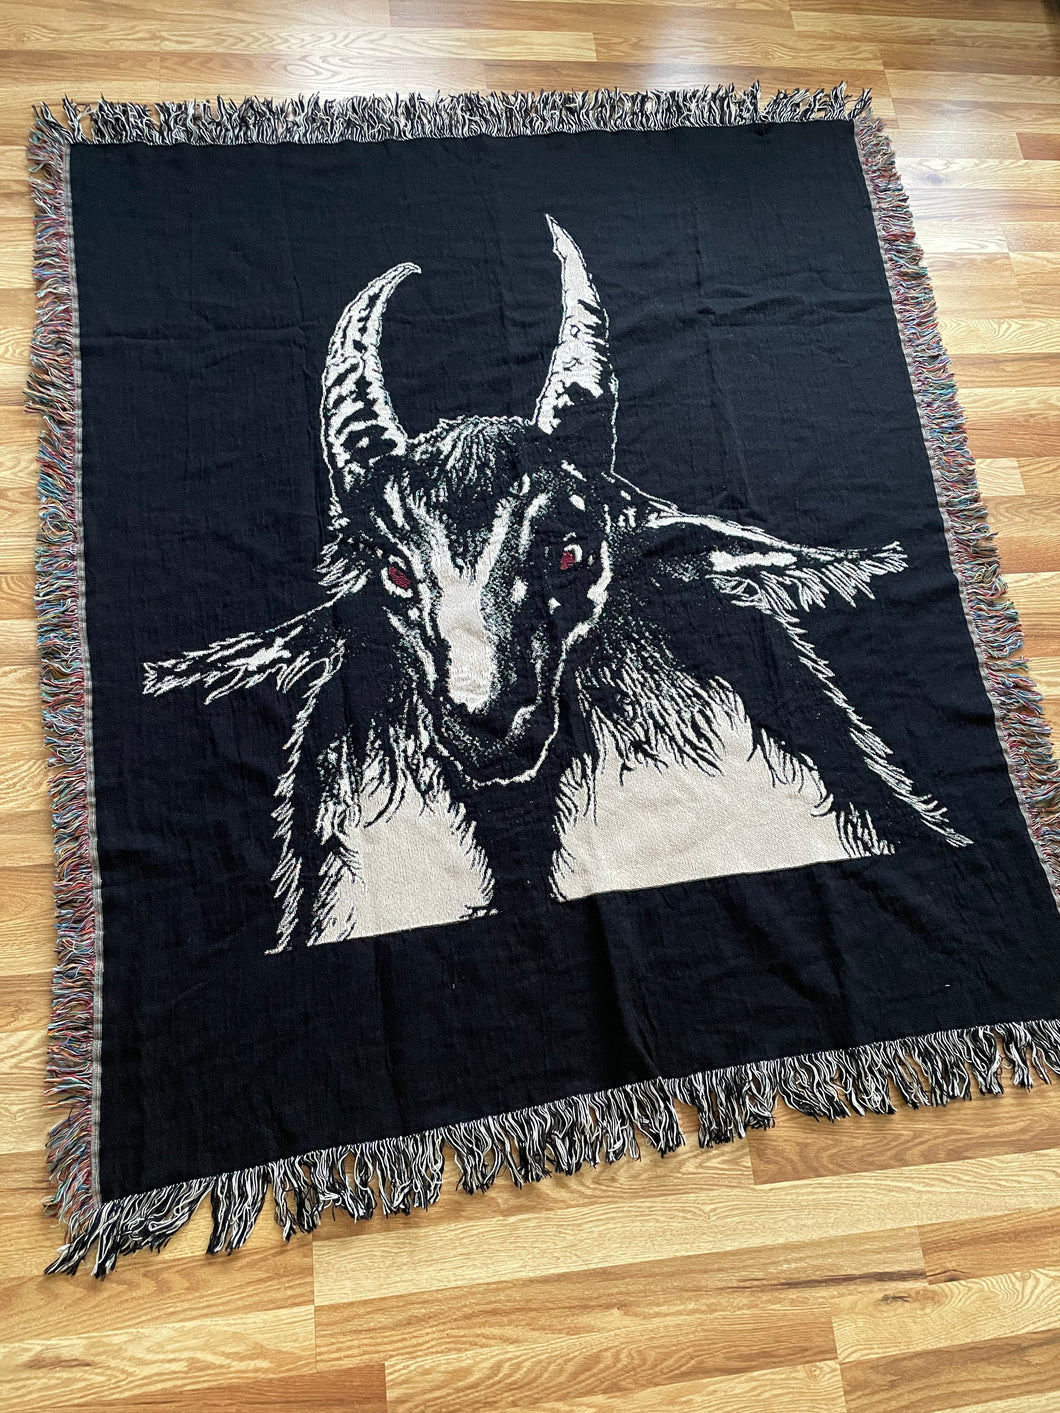 Bathory Goat - Woven Blanket / Tapestry